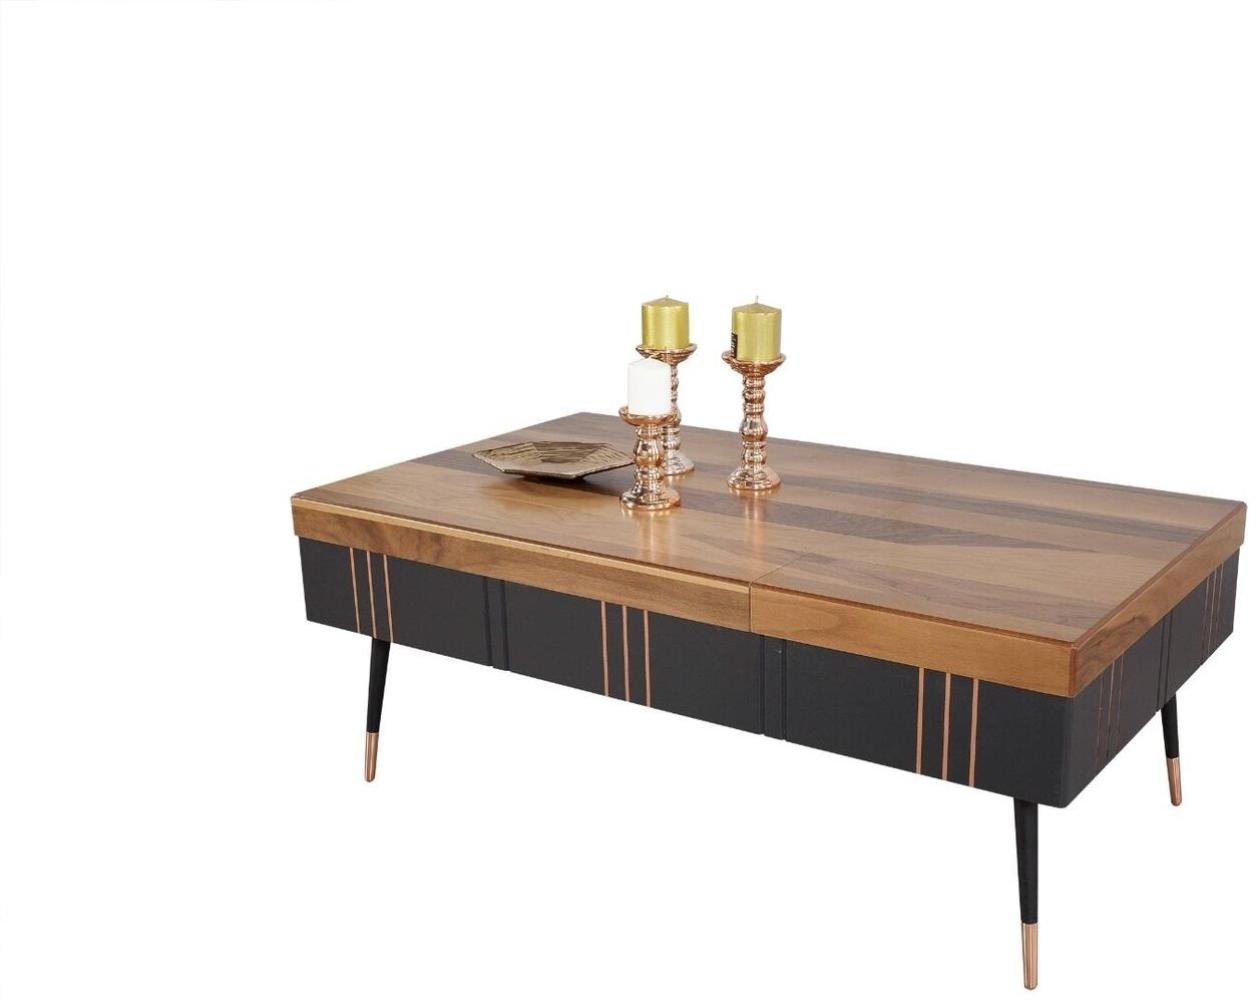 Kaffeetisch Couchtisch Tisch Wohnzimmer Tische Beistelltisch Holz Sofa 120x68cm Bild 1